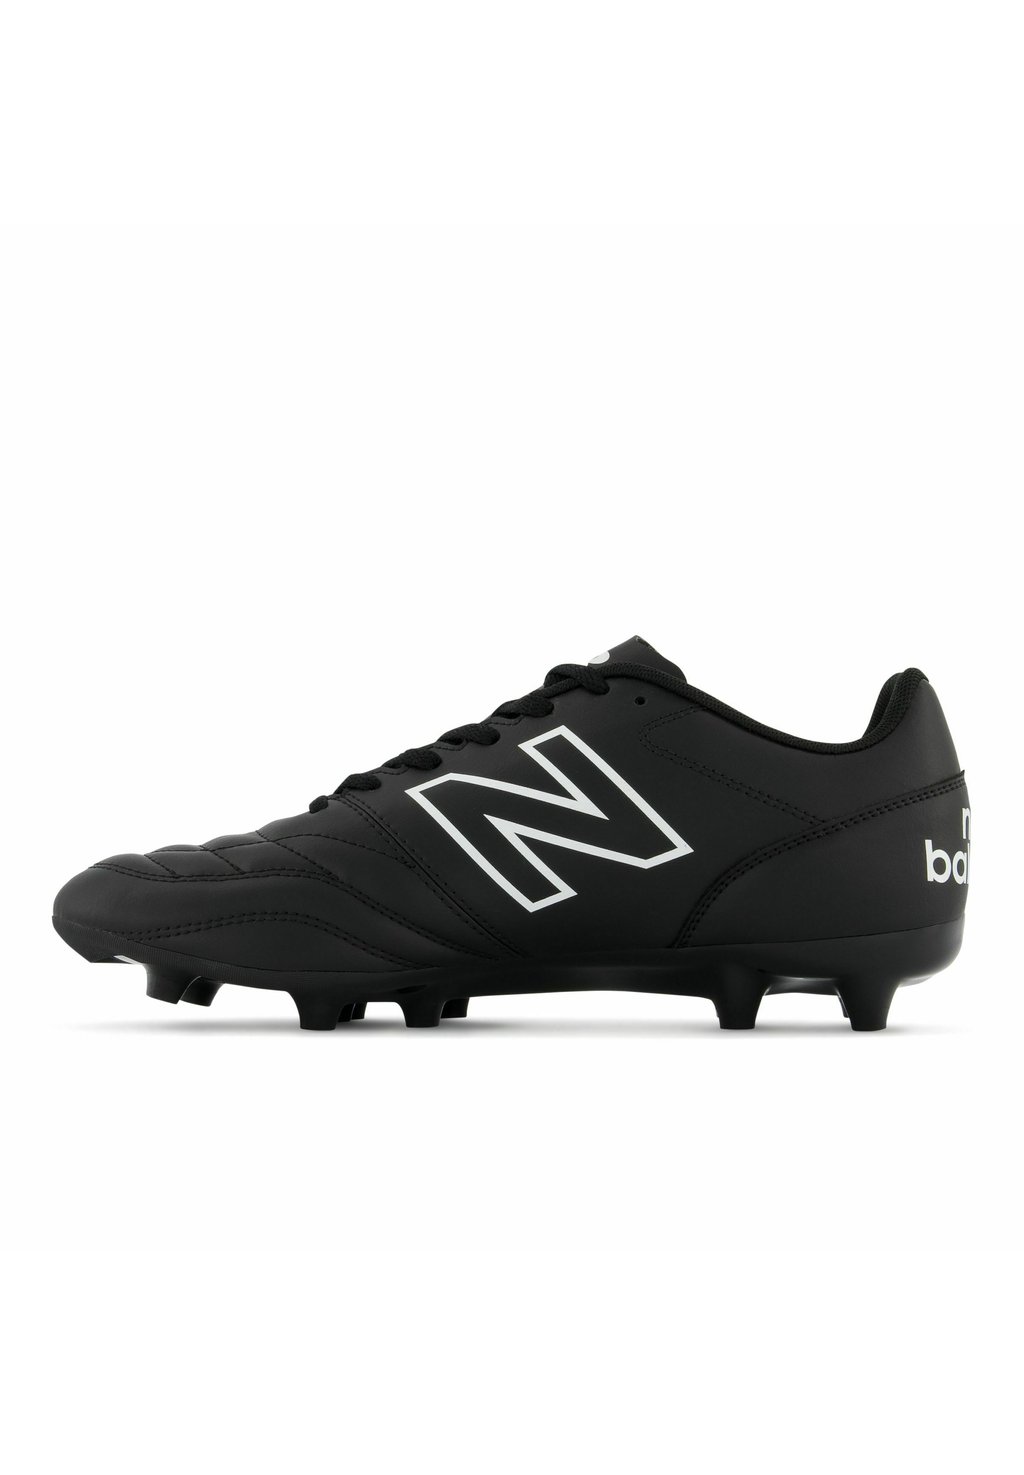 Низкие кроссовки 442 V2 Academy Fg Футбольные Ботинки New Balance, цвет black white